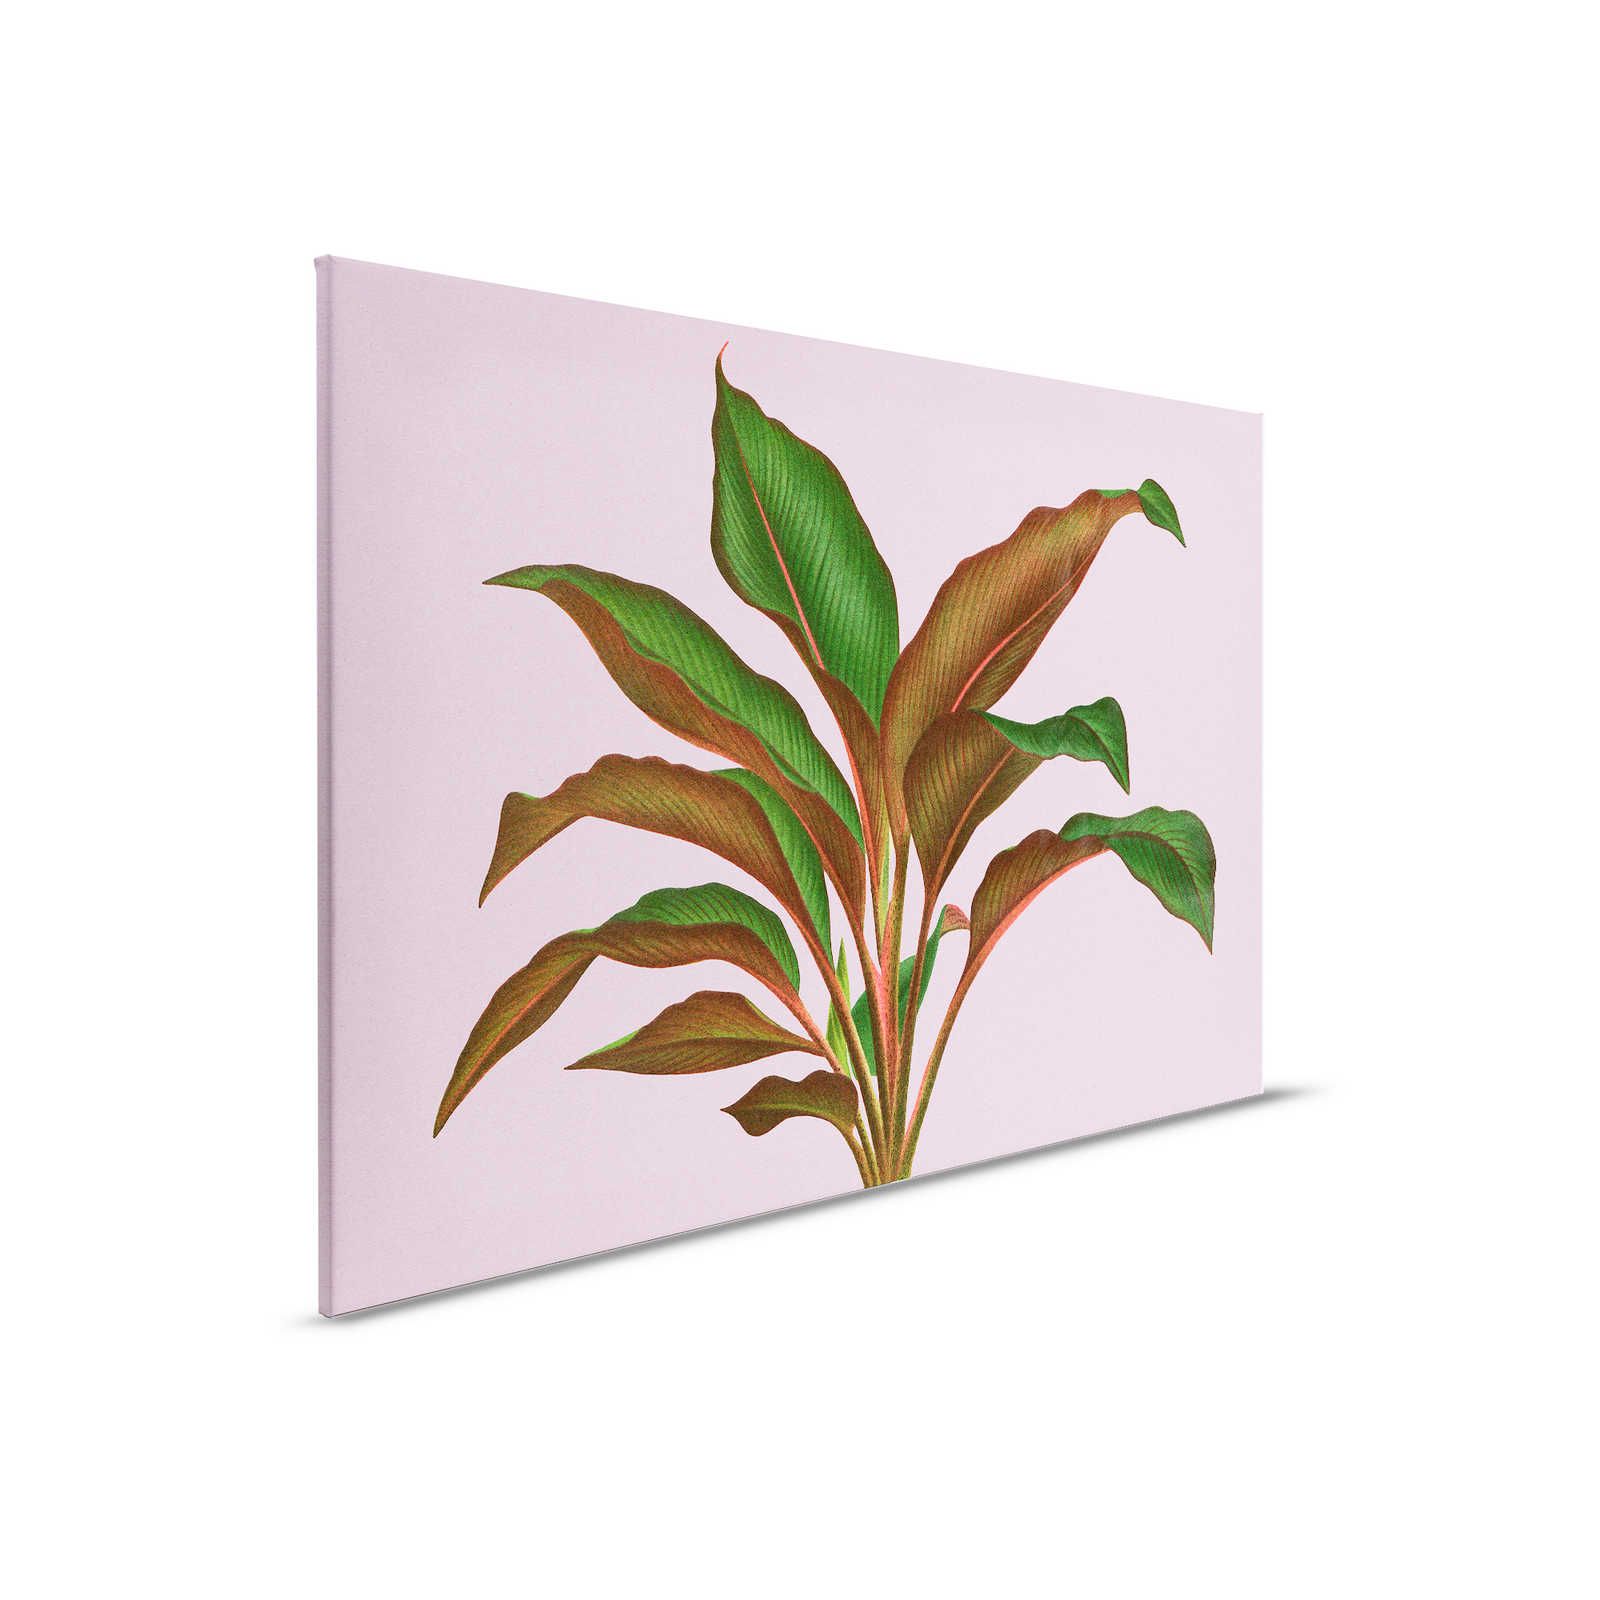 Leaf Garden 3 - Feuilles Tableau sur toile Rose avec feuille de fougère tropicale - 0,90 m x 0,60 m
